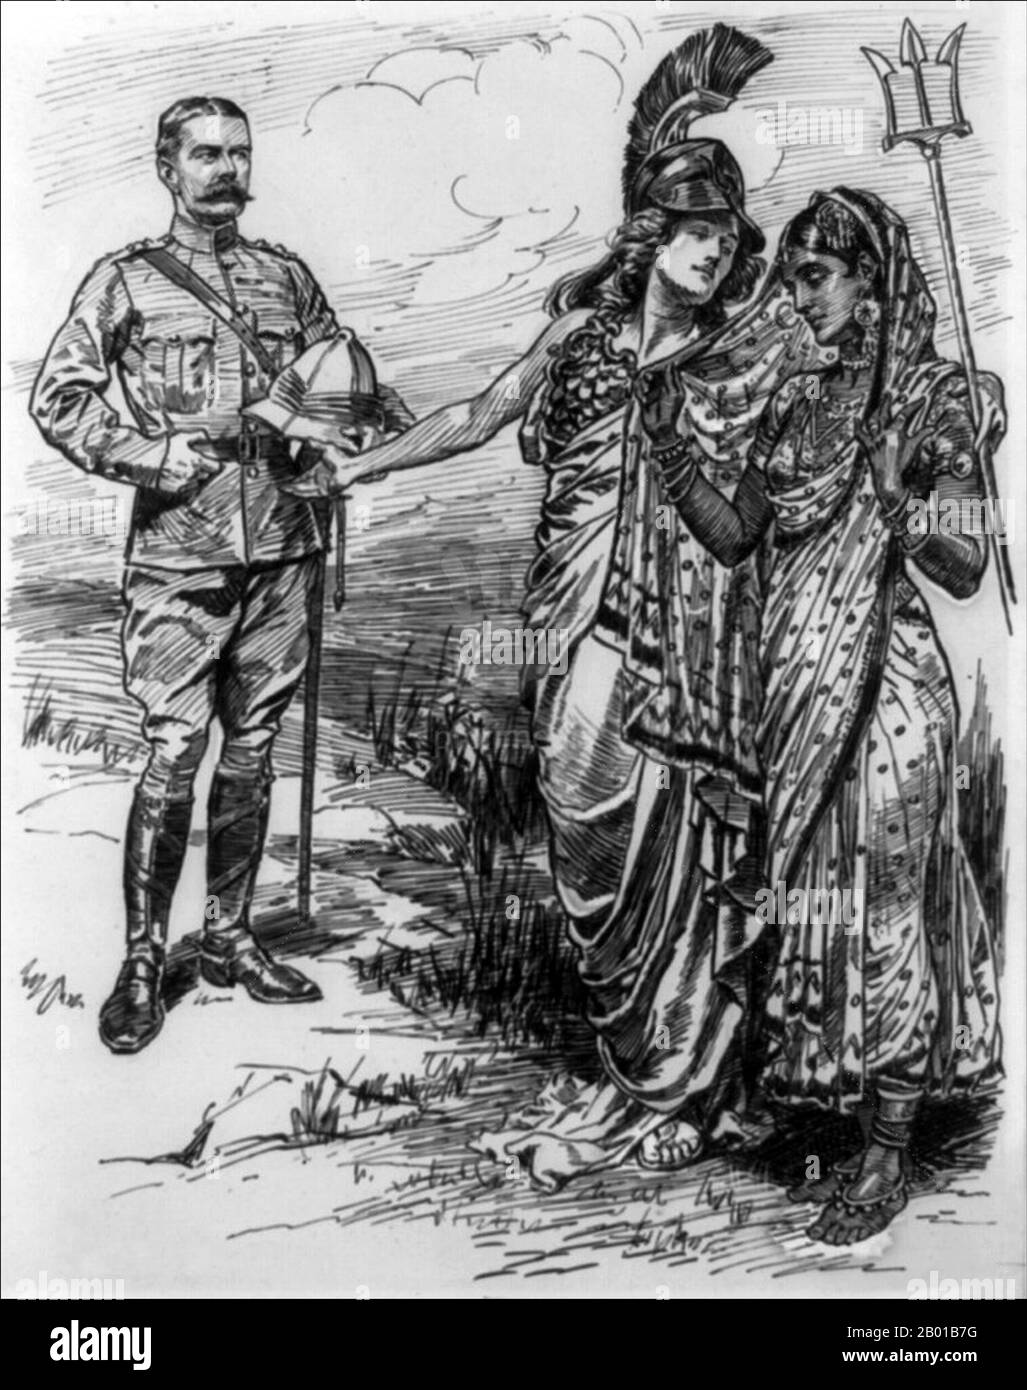 Reino Unido/India: «¡ho hacia el este!». Dibujos animados para 'Punch' de Sir John Bernard Partridge (11 de octubre de 1861 - 9 de agosto de 1945), 16 de julio de 1902. Inscrita abajo título: 'Podemos perdonarlo; pero ves que te damos lo mejor.' Britannia, sosteniendo a su tridente, introduce a señor Kitchener a una India descaradamente velada. Horatio Herbert Kitchener (24 de junio de 1850 - 5 de junio de 1916) se desempeñó como Comandante en Jefe de la India (r. 1902-1909) después de su regreso triunfal de las Guerras de Boer en Sudáfrica en 1902. Foto de stock